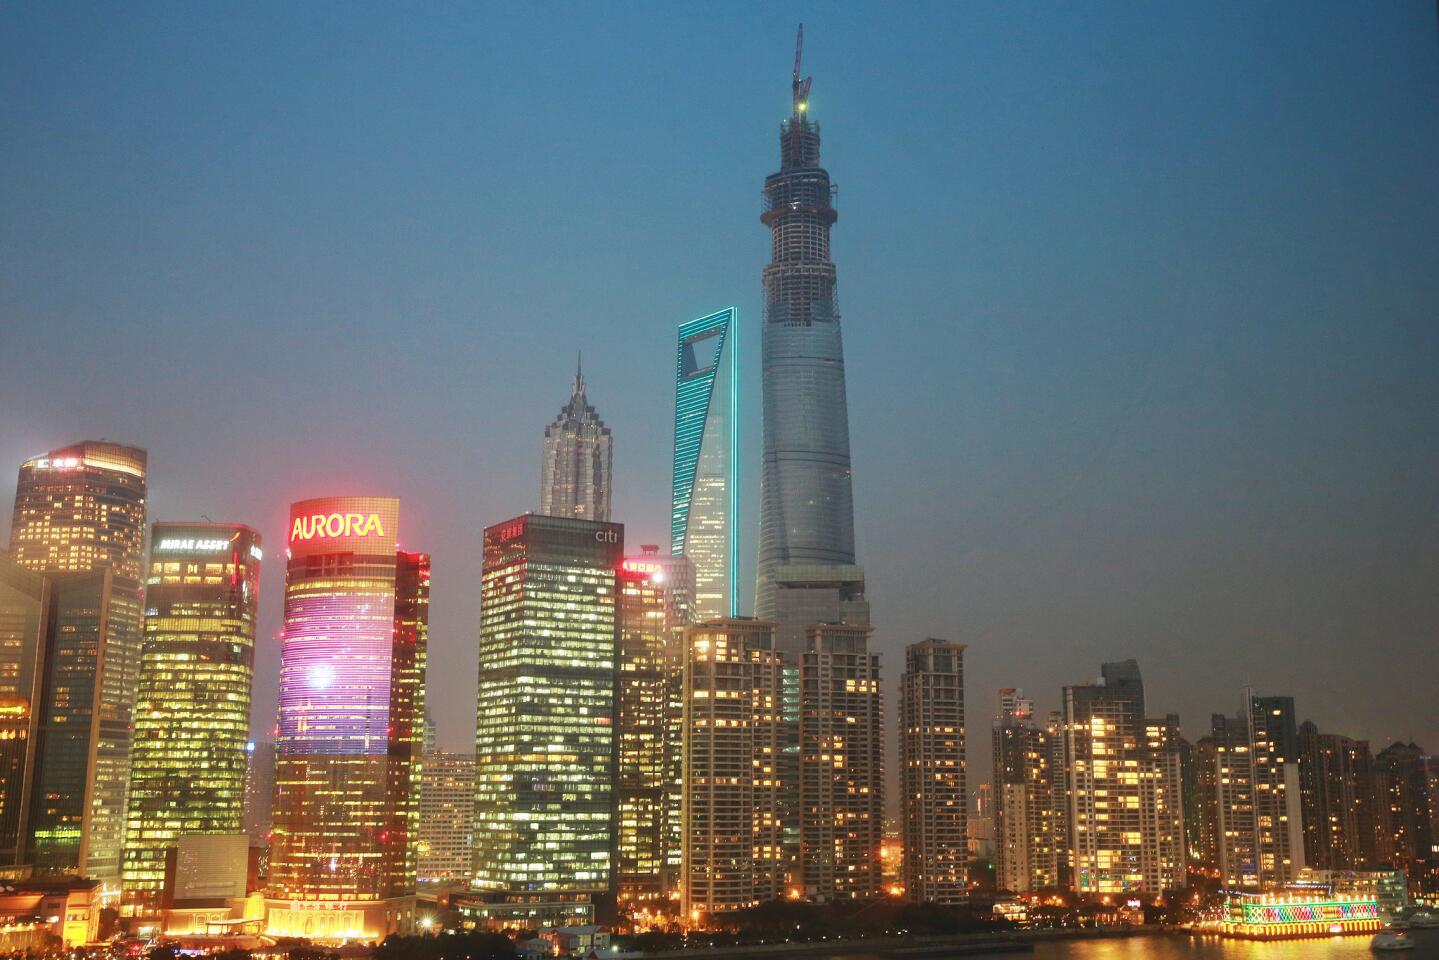 2. Shanghai Tower, Shanghai (2,073 feet)